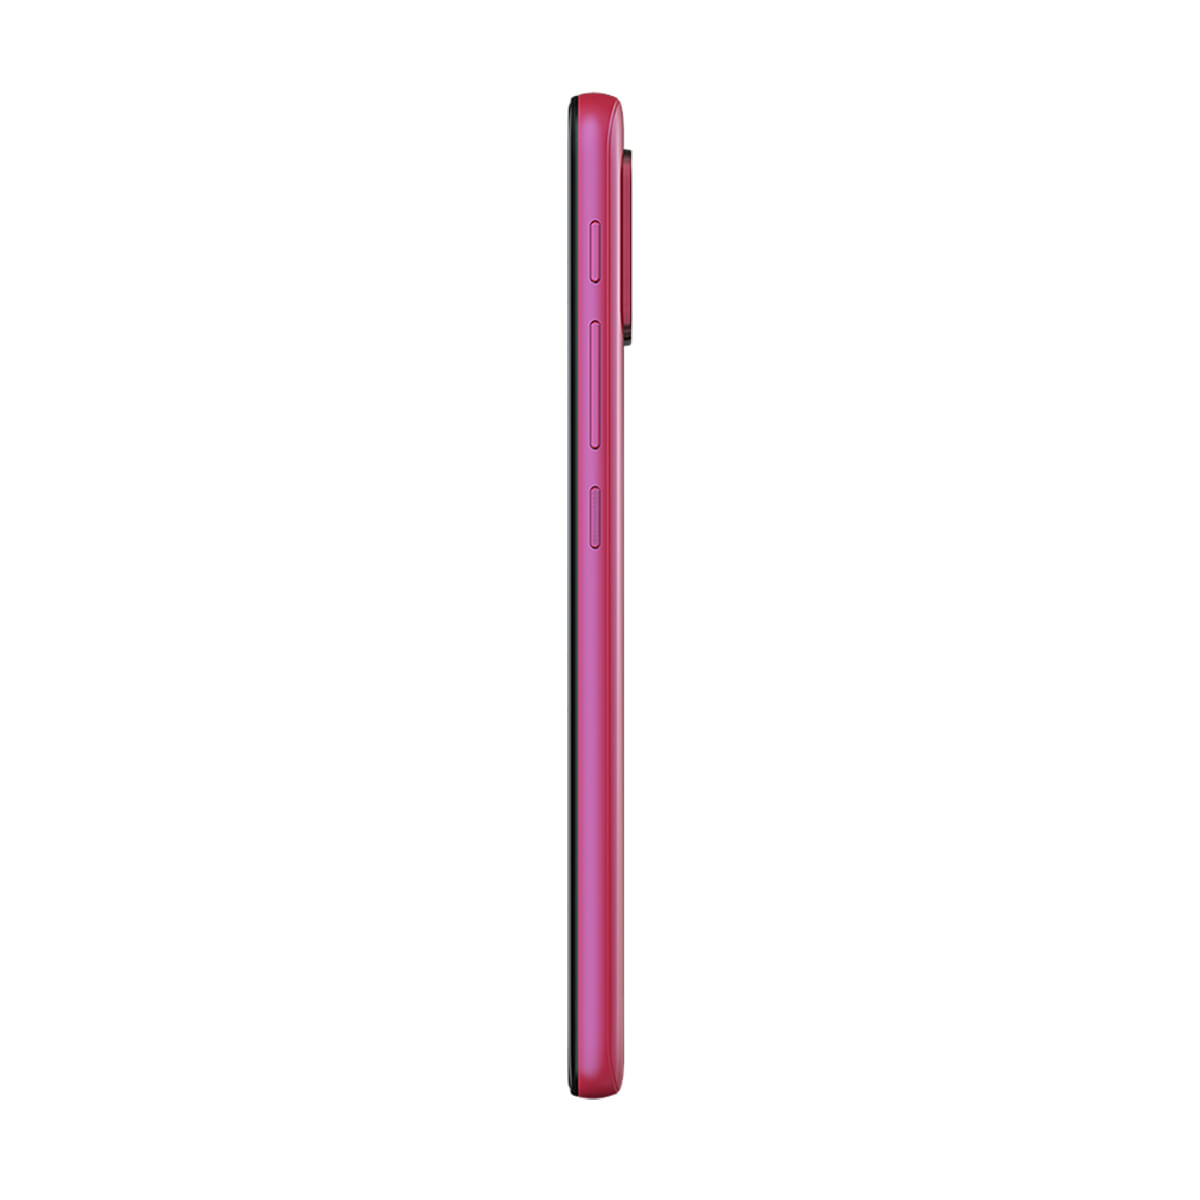 Smartphone Motorola Moto G20 64GB Pink Câmera Quádrupla Tela 6.5 Perfil Direito